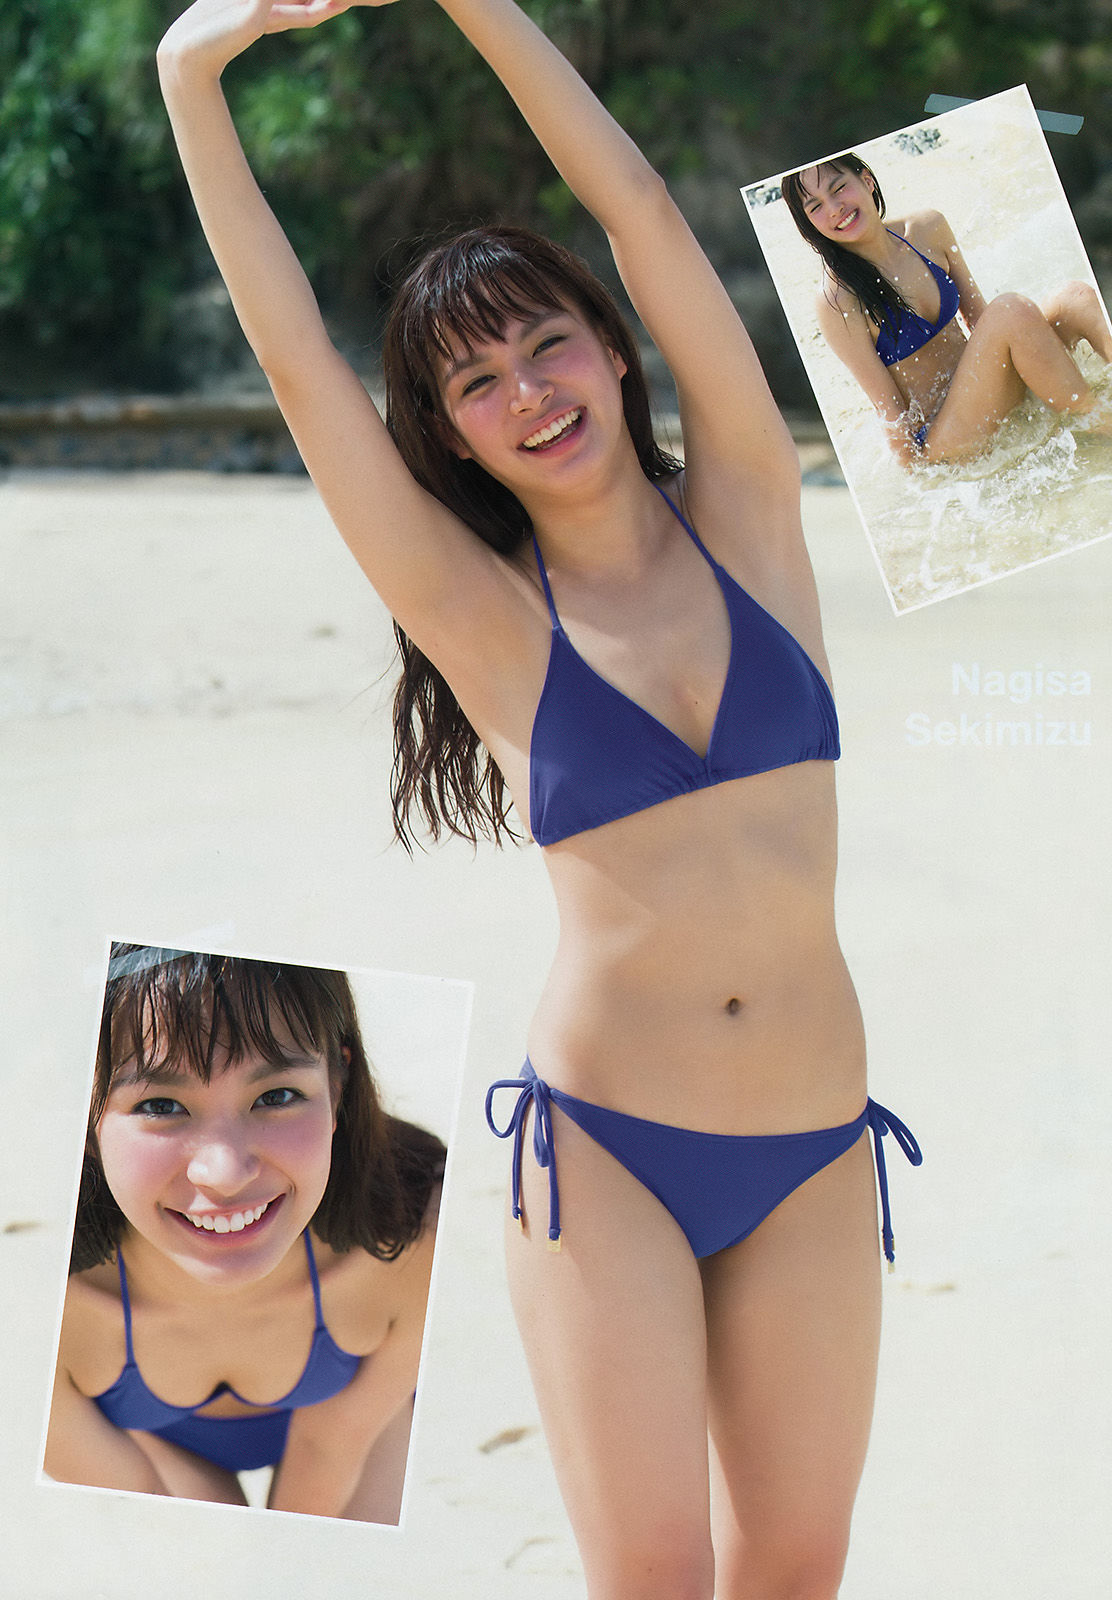 [Young Magazine]日本嫩模:关水渚无水印私房照片收藏合集(12P)